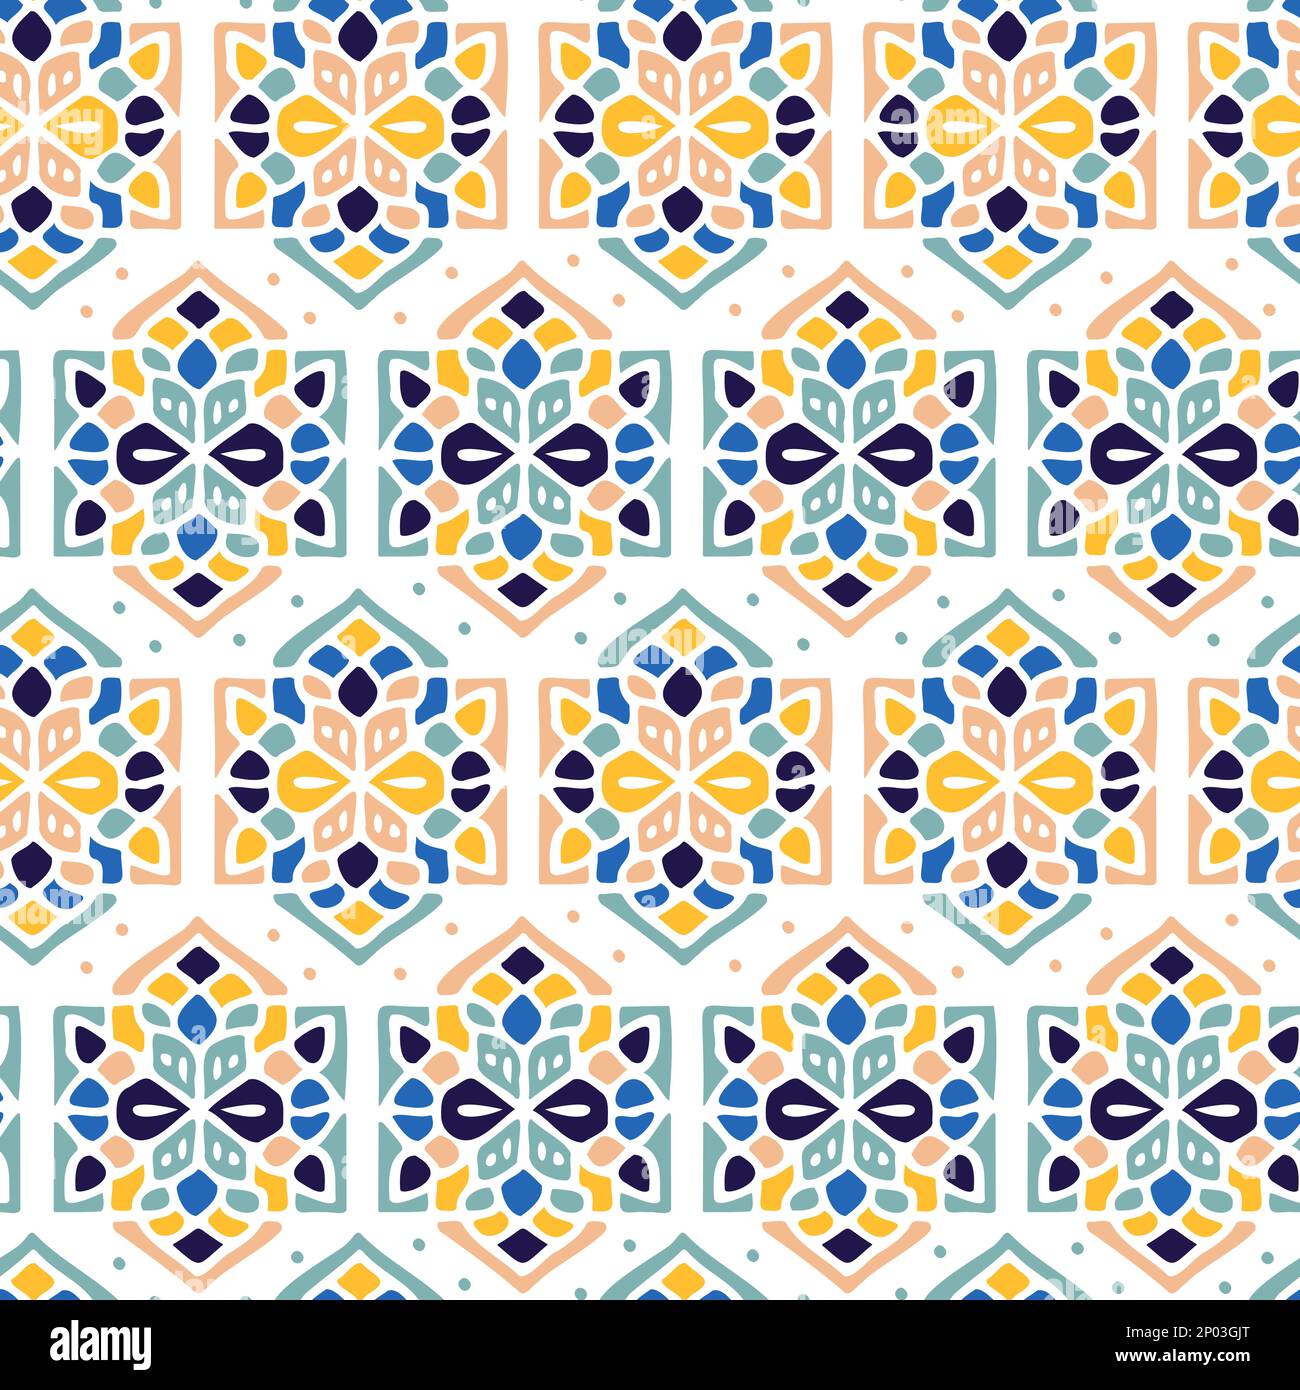 Carreaux de sol de style rétro ou traditionnel portugais ou marocain Vector motif de surface sans couture pour les impressions de fond, de produits ou de papier d'emballage. Illustration de Vecteur